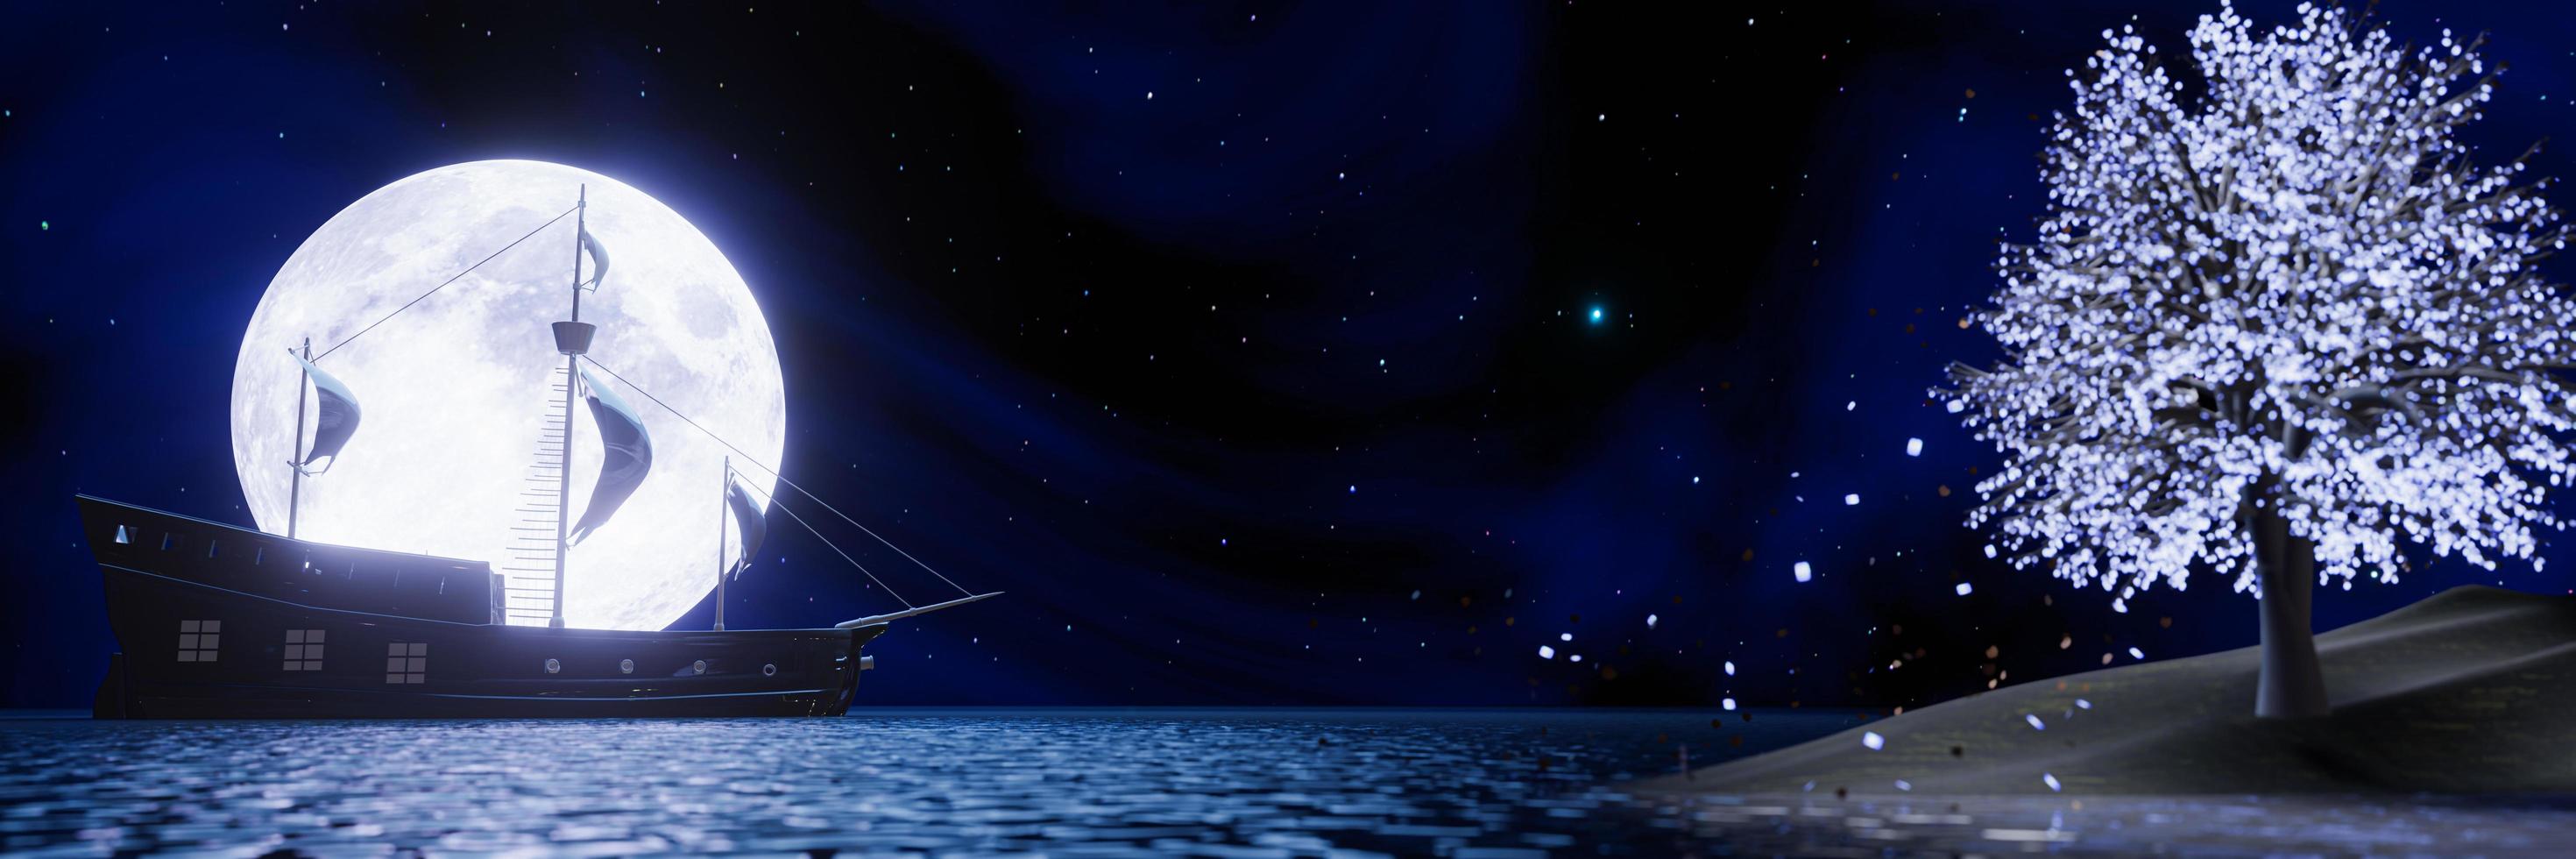 navios piratas no mar ou oceano em frente à lua cheia. silhueta de navio pirata após super lua com reflexo na superfície da água. árvore brilhante no lado fora de foco é bokeh. renderização em 3D foto